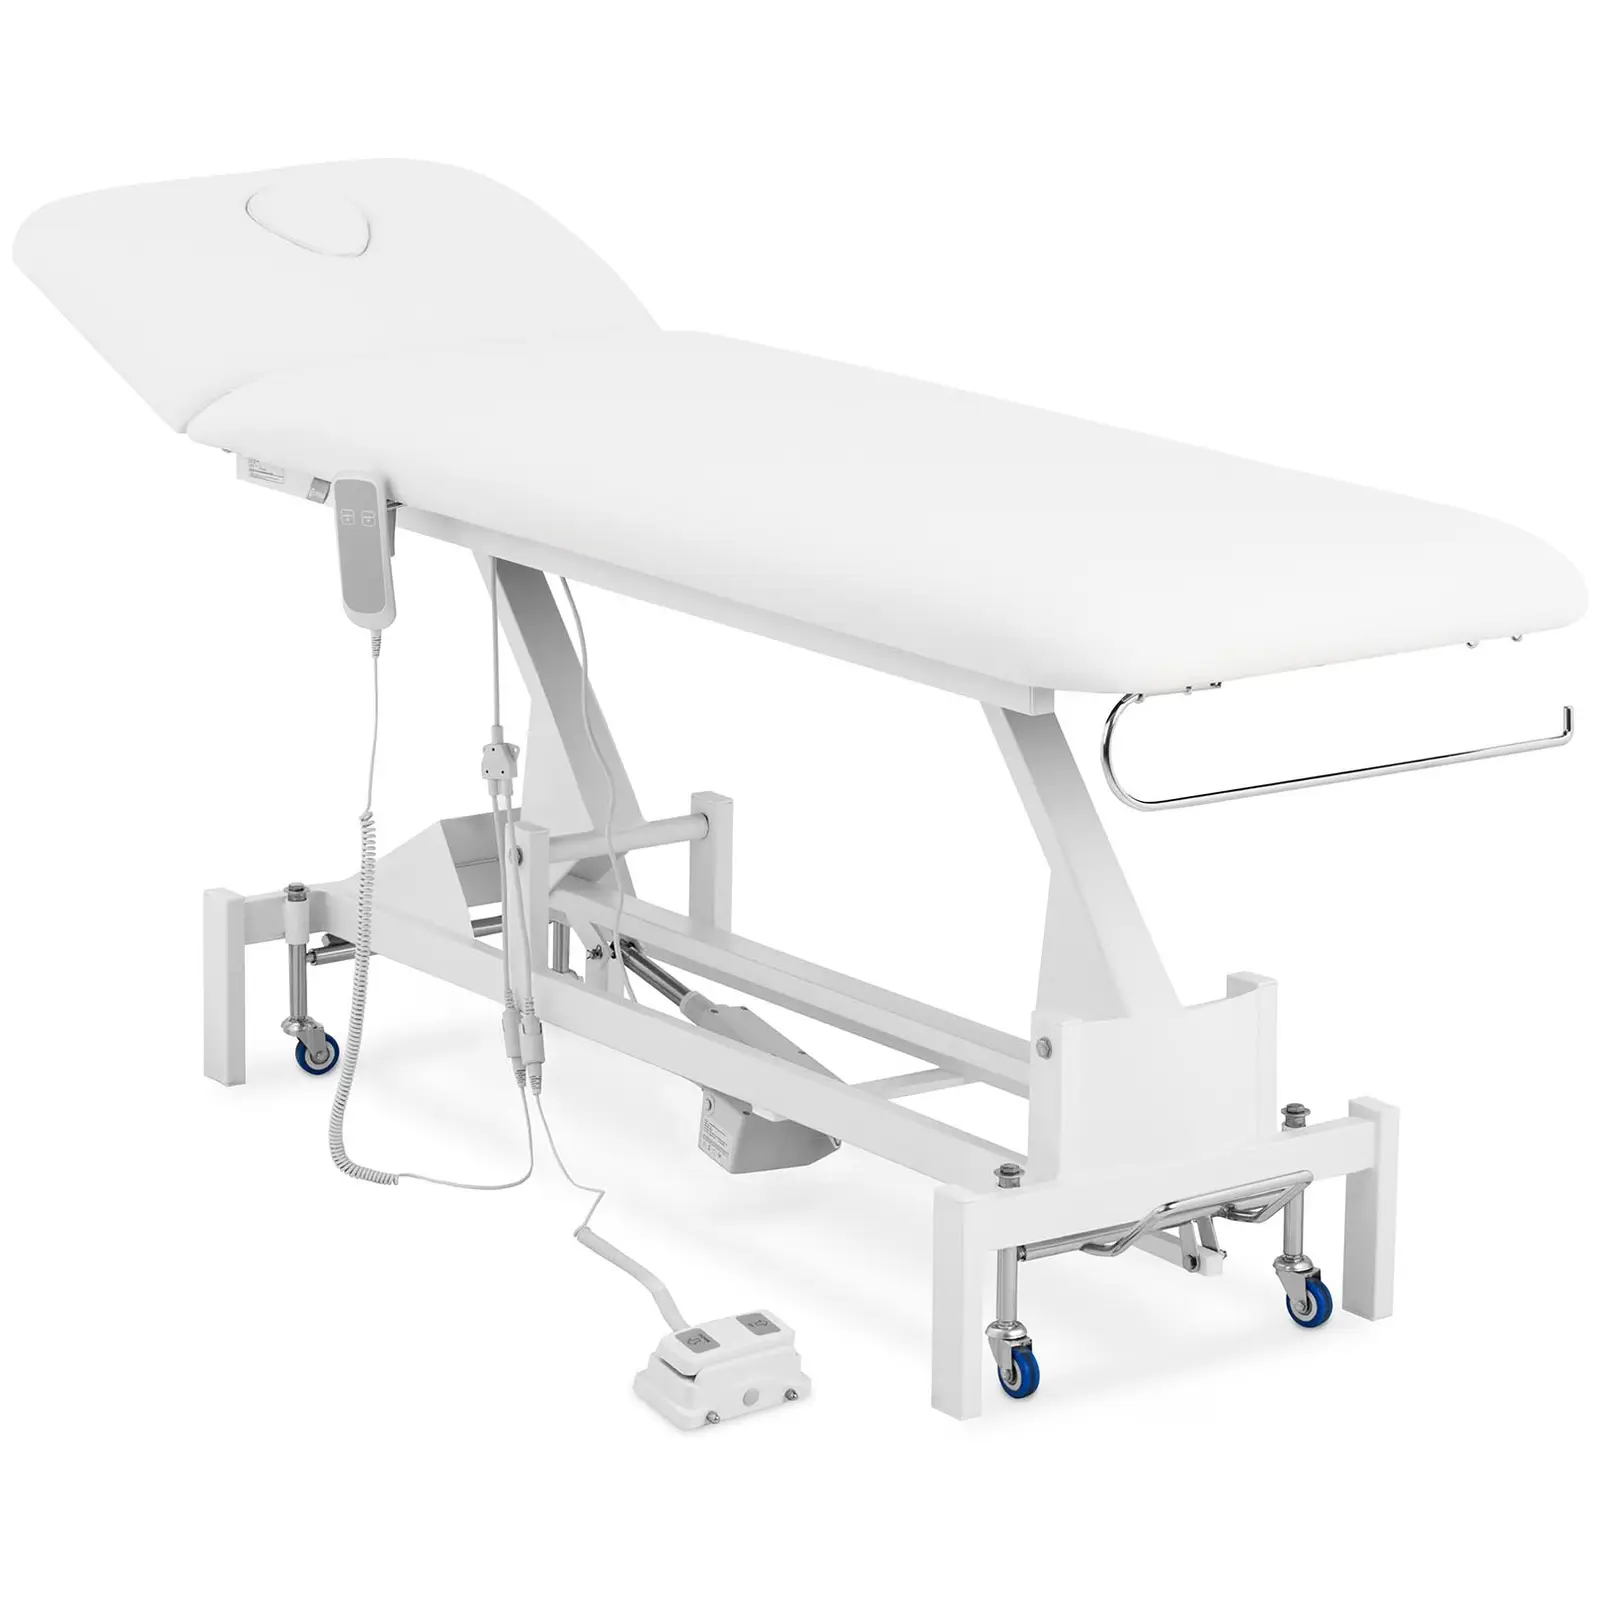 Table de massage électrique - 50 W - 200 kg - Blanc